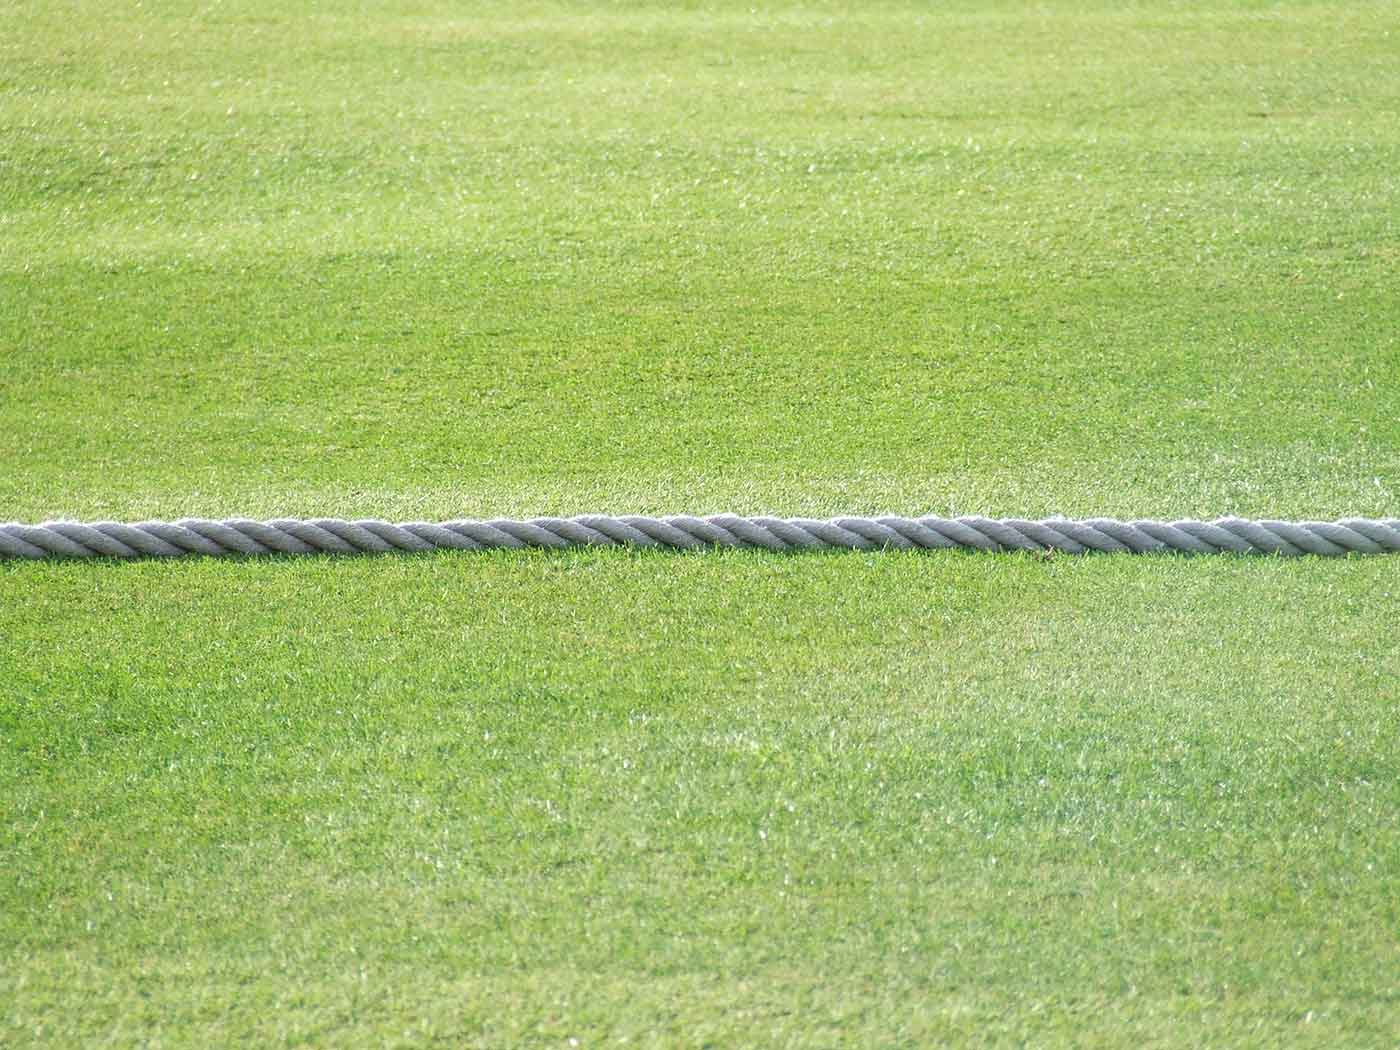 Cricket boundary rope